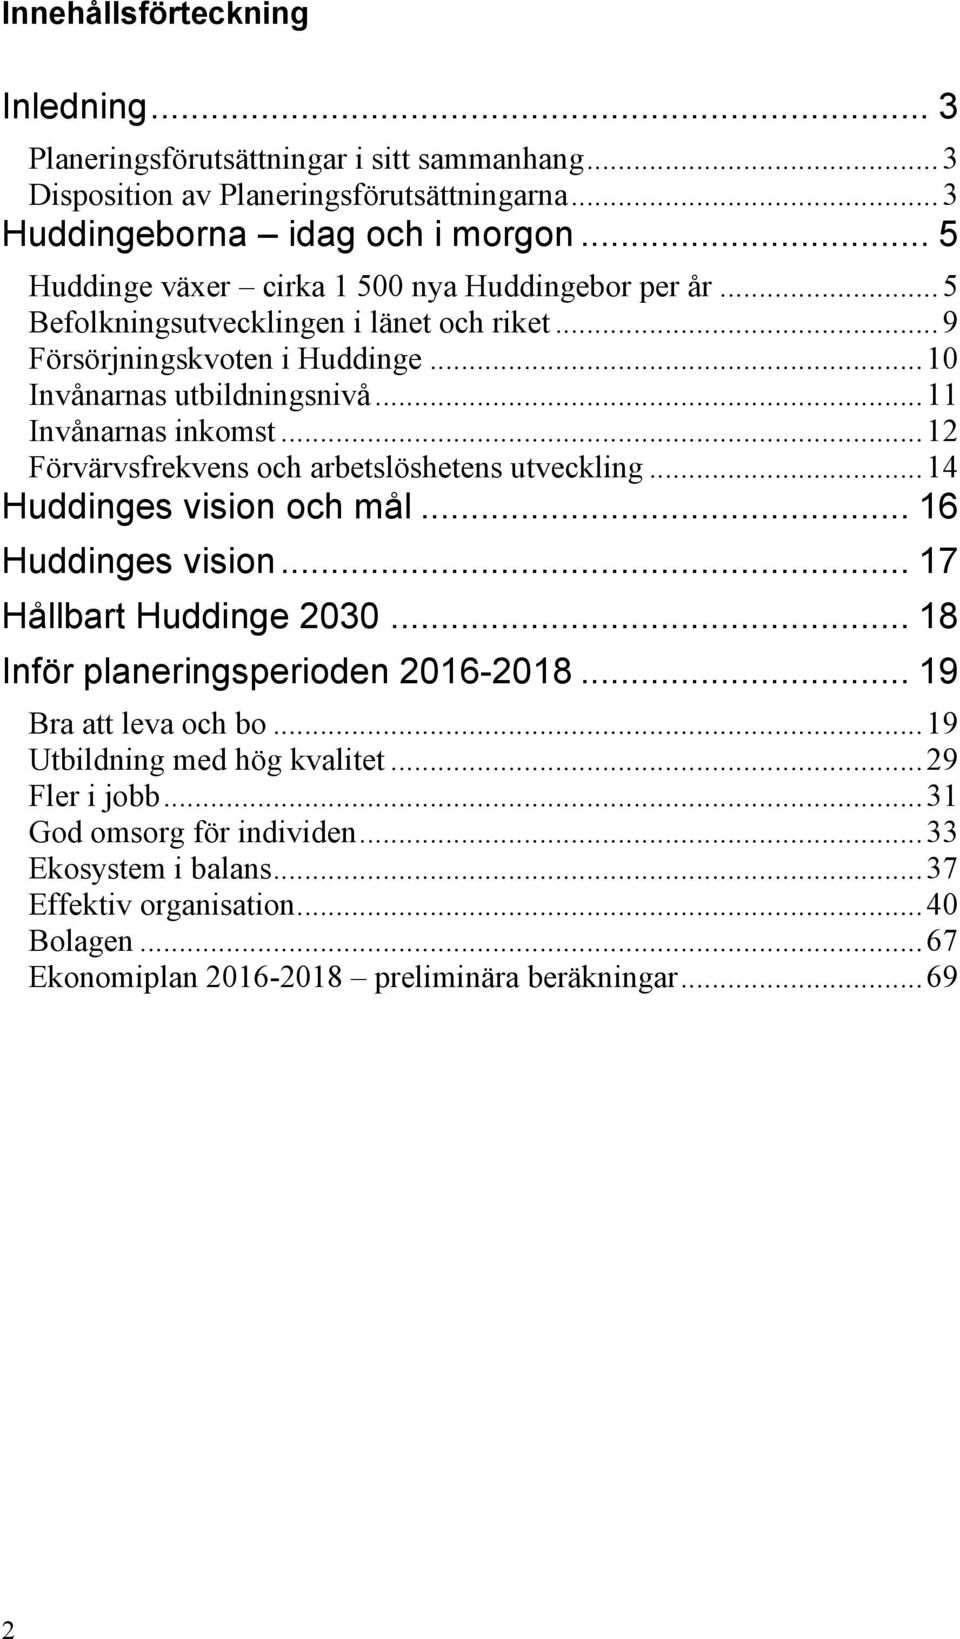 .. 12 Förvärvsfrekvens och arbetslöshetens utveckling... 14 Huddinges vision och mål... 16 Huddinges vision... 17 Hållbart Huddinge 2030... 18 Inför planeringsperioden 2016-2018.